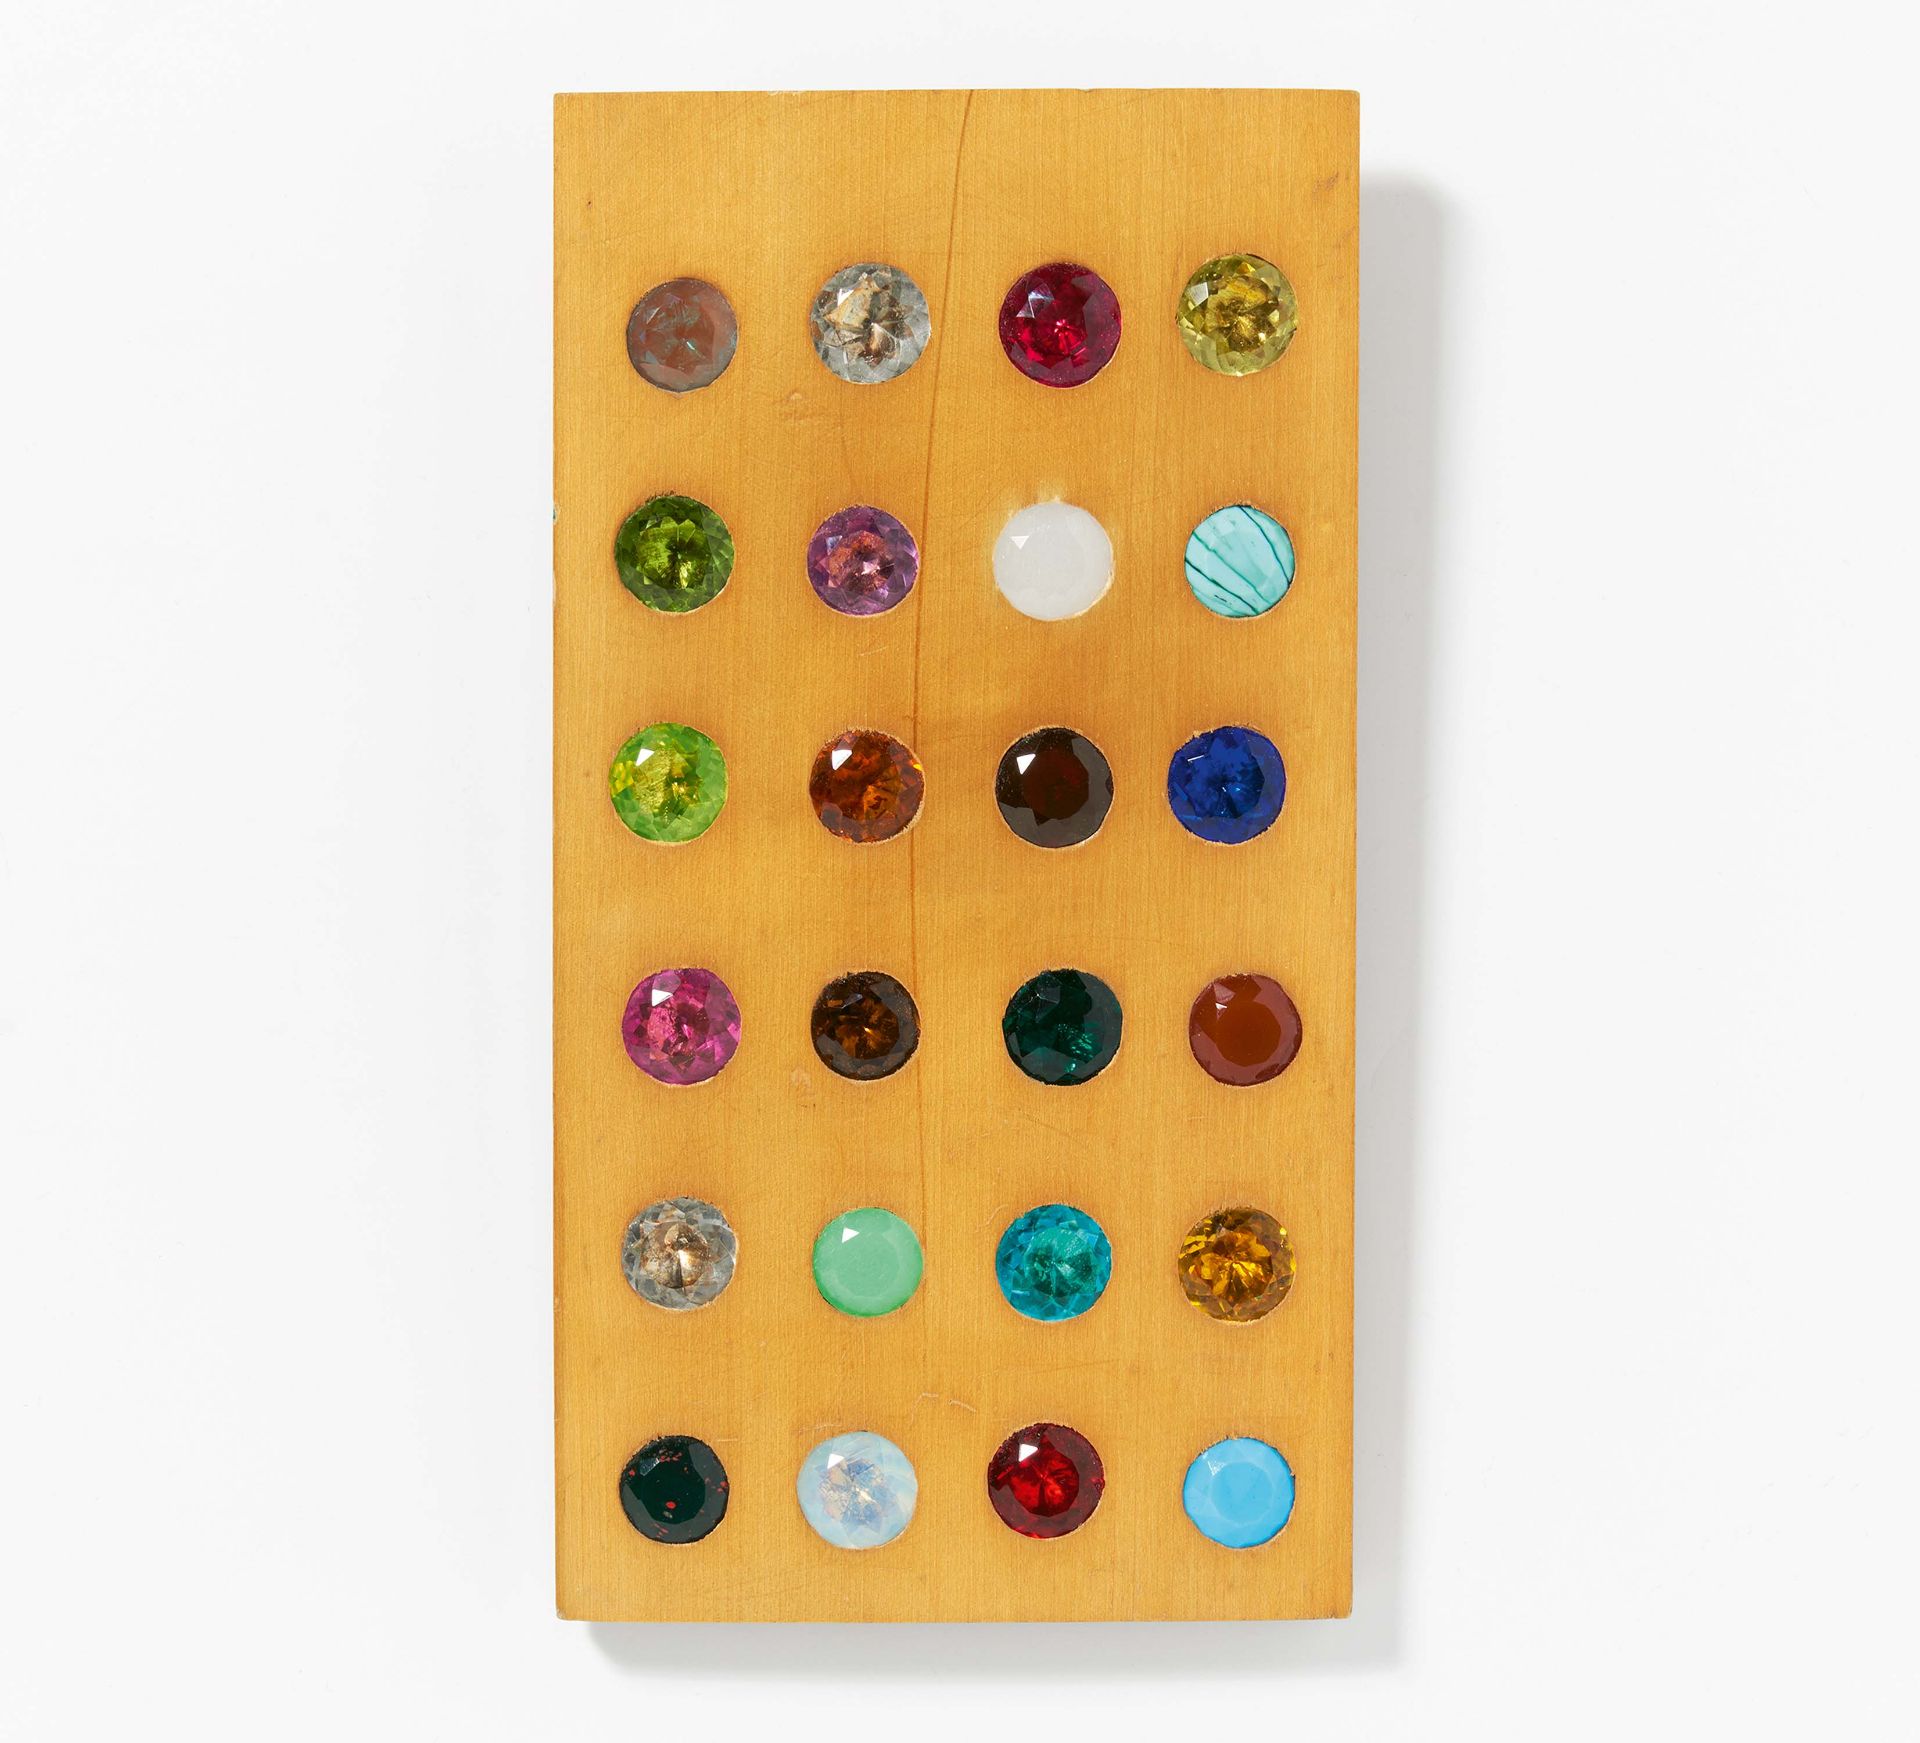 Tafel zur praktischen Farben-Anschauung der Edelsteine